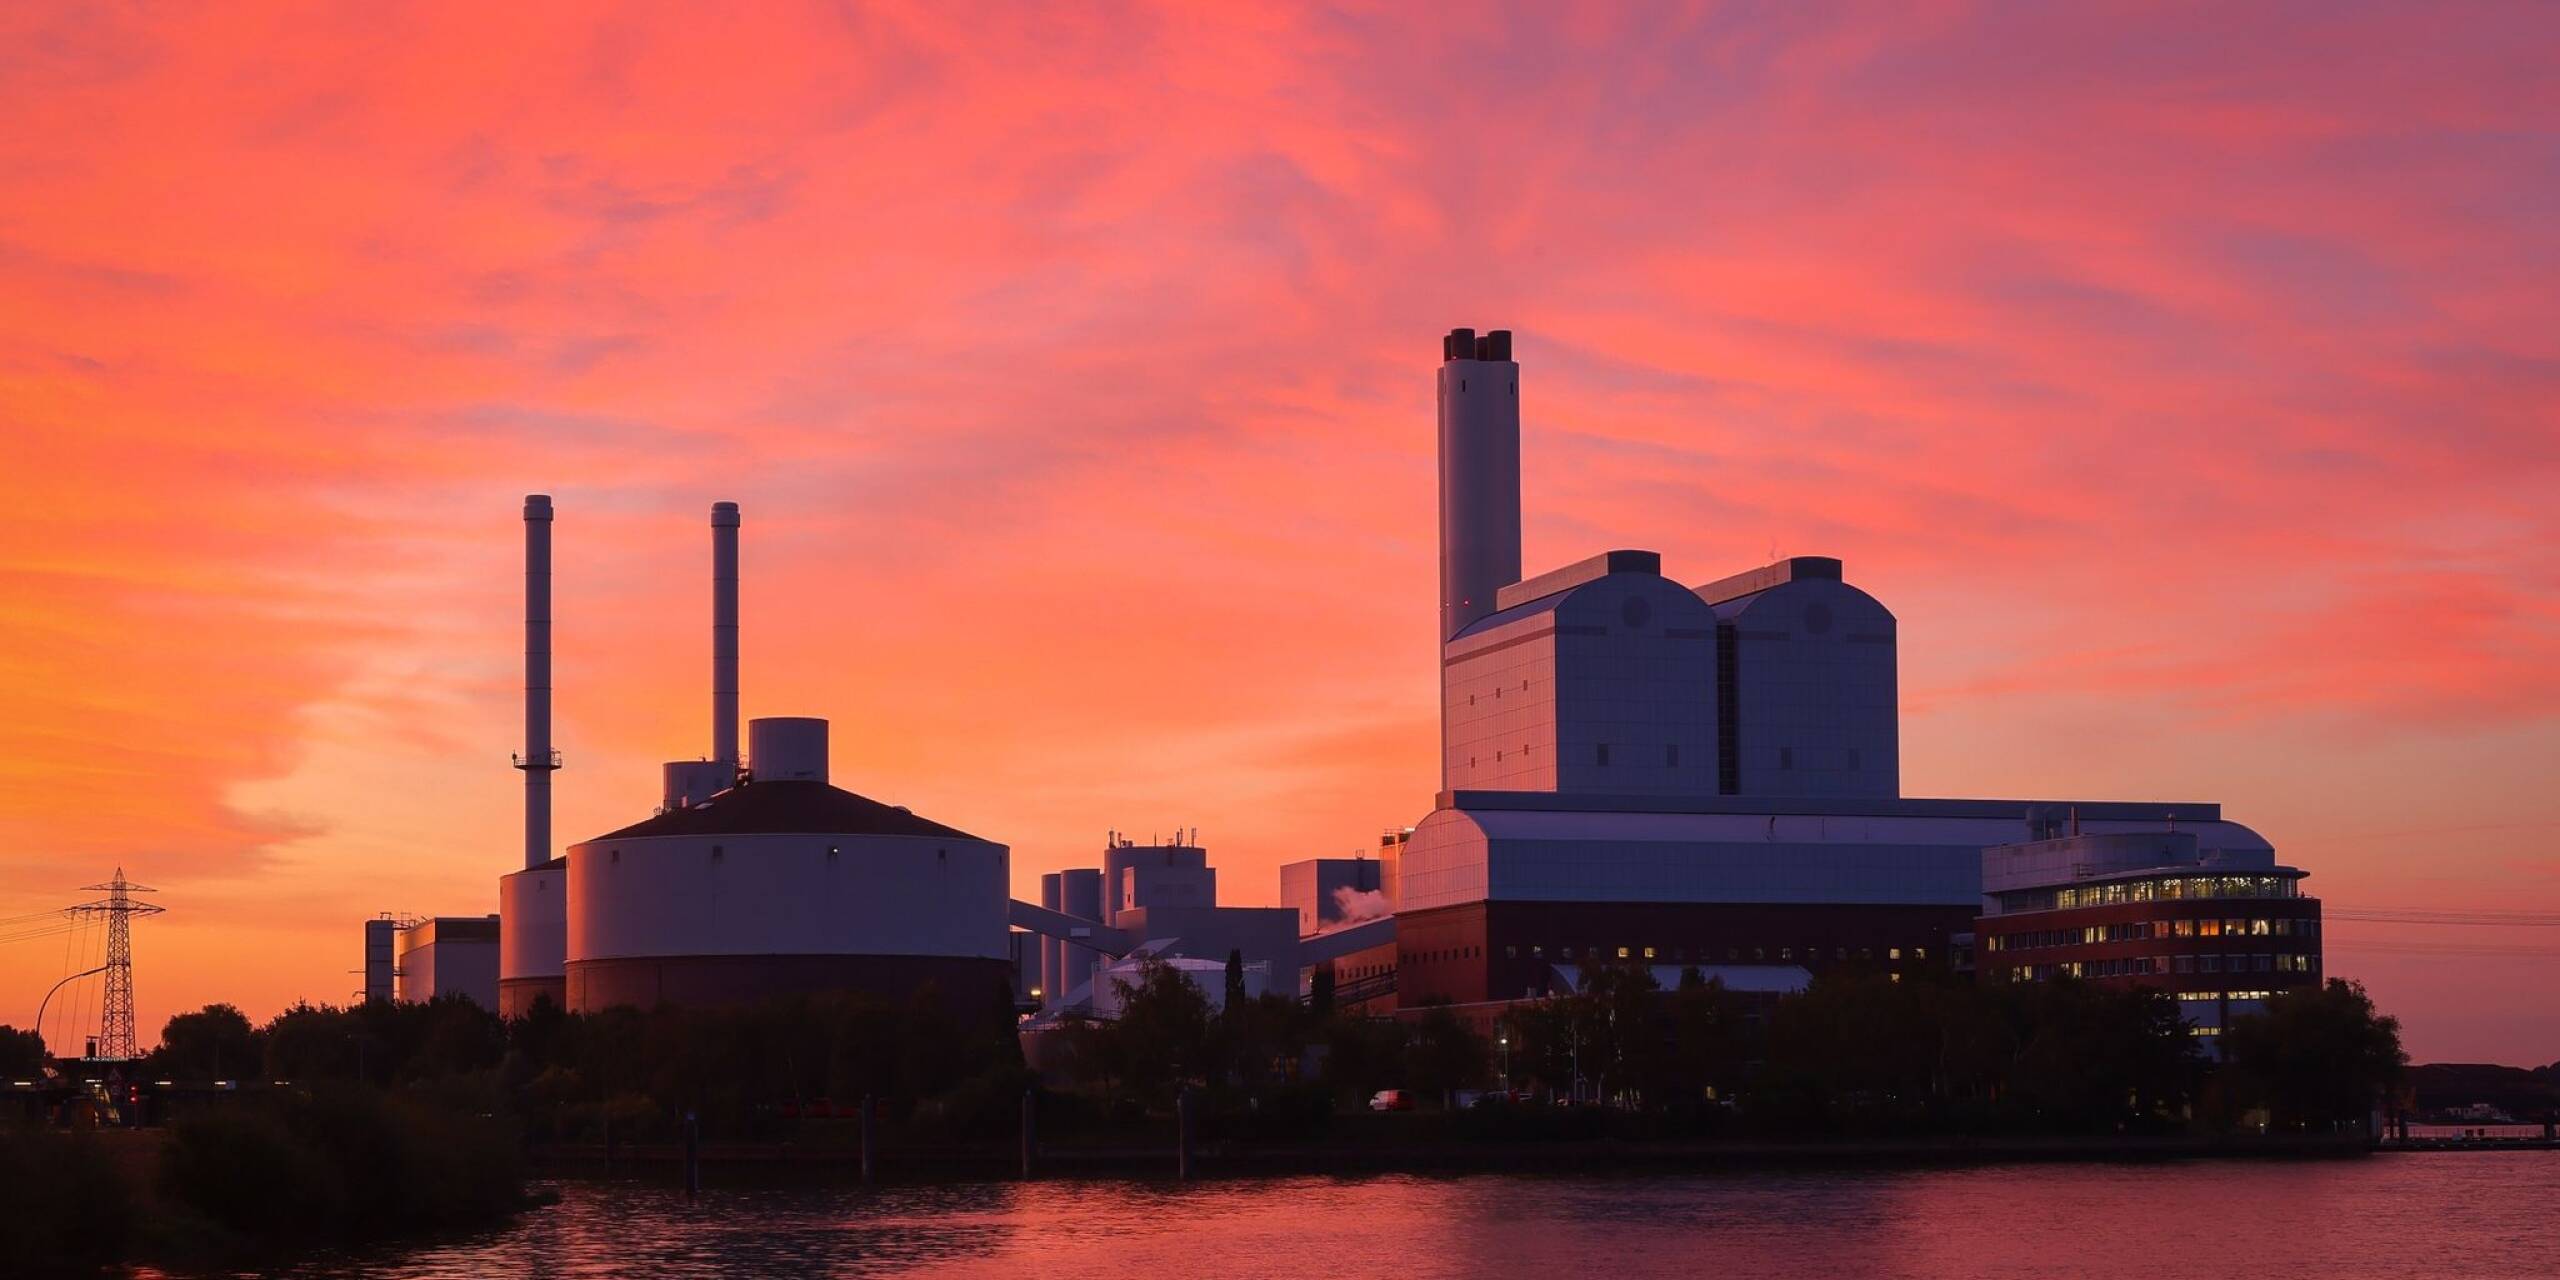 Das Heizkraftwerk Tiefstack mit überaus pittoreskem Hintergrund. Bei der Anlage handelt es sich um ein Kohle-, Gas- und Dampfkraftwerk, das Strom und Wärme ins Hamburger Strom- und Fernwärmenetz einspeist.